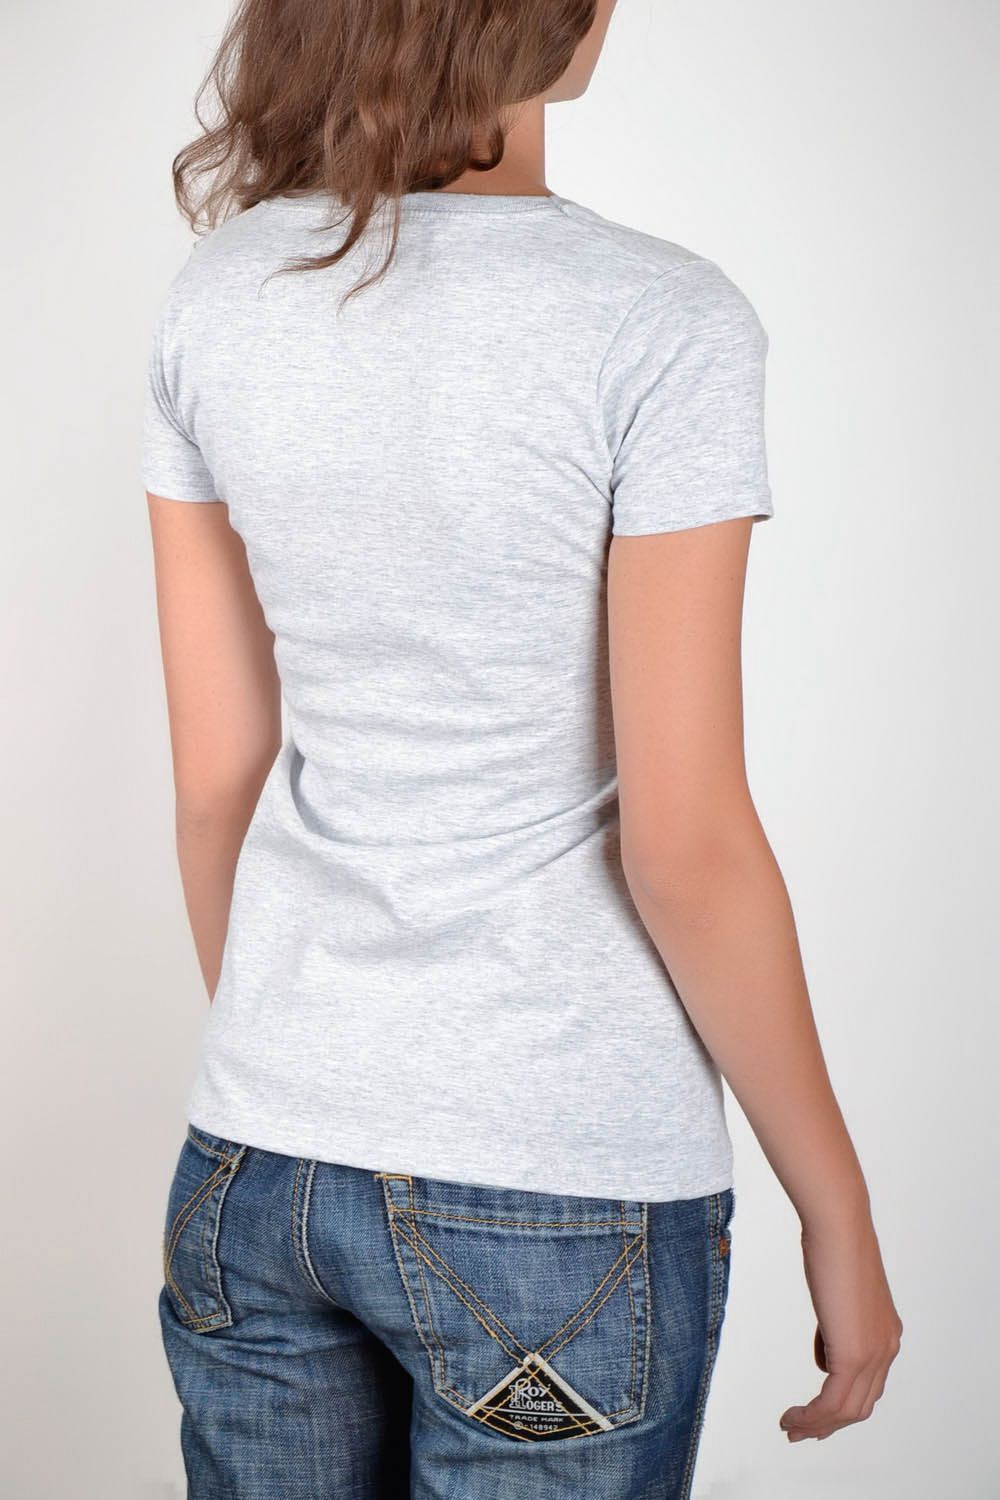 Camiseta feminina com imagem foto 3